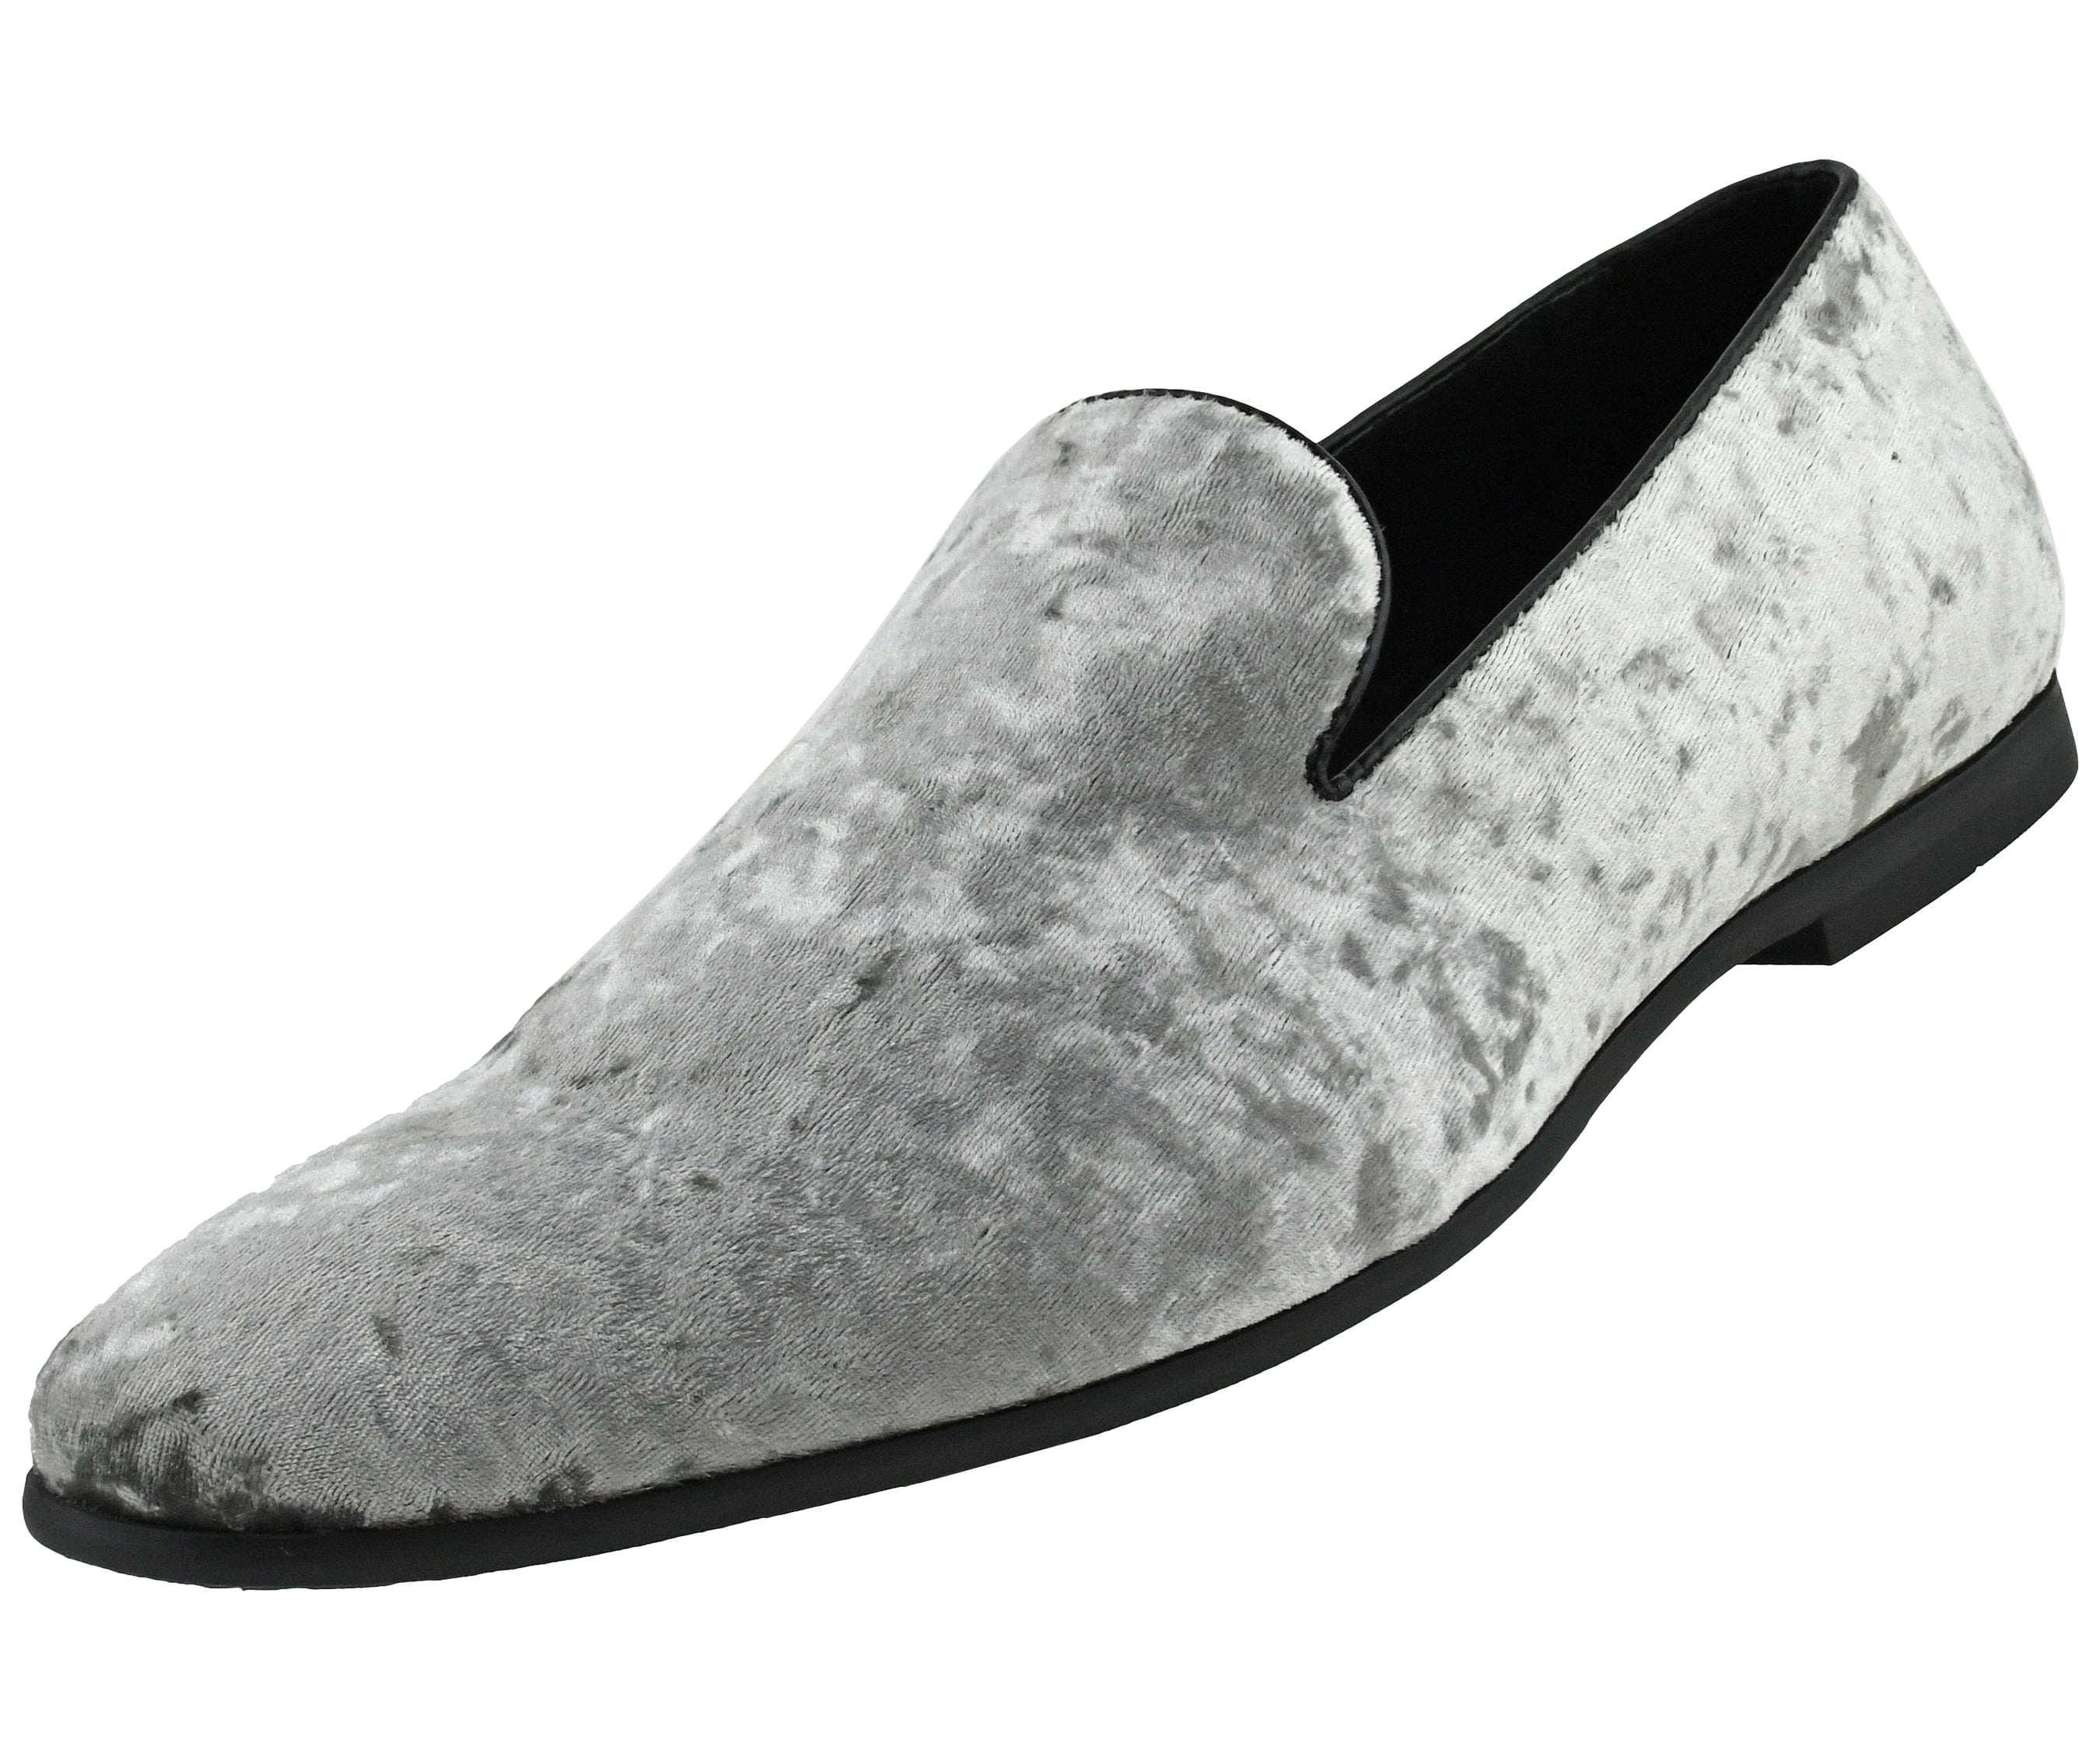 Men's Amali Cognac Paisley Print Slip Ons Shoes US Sizes 8.5-12 